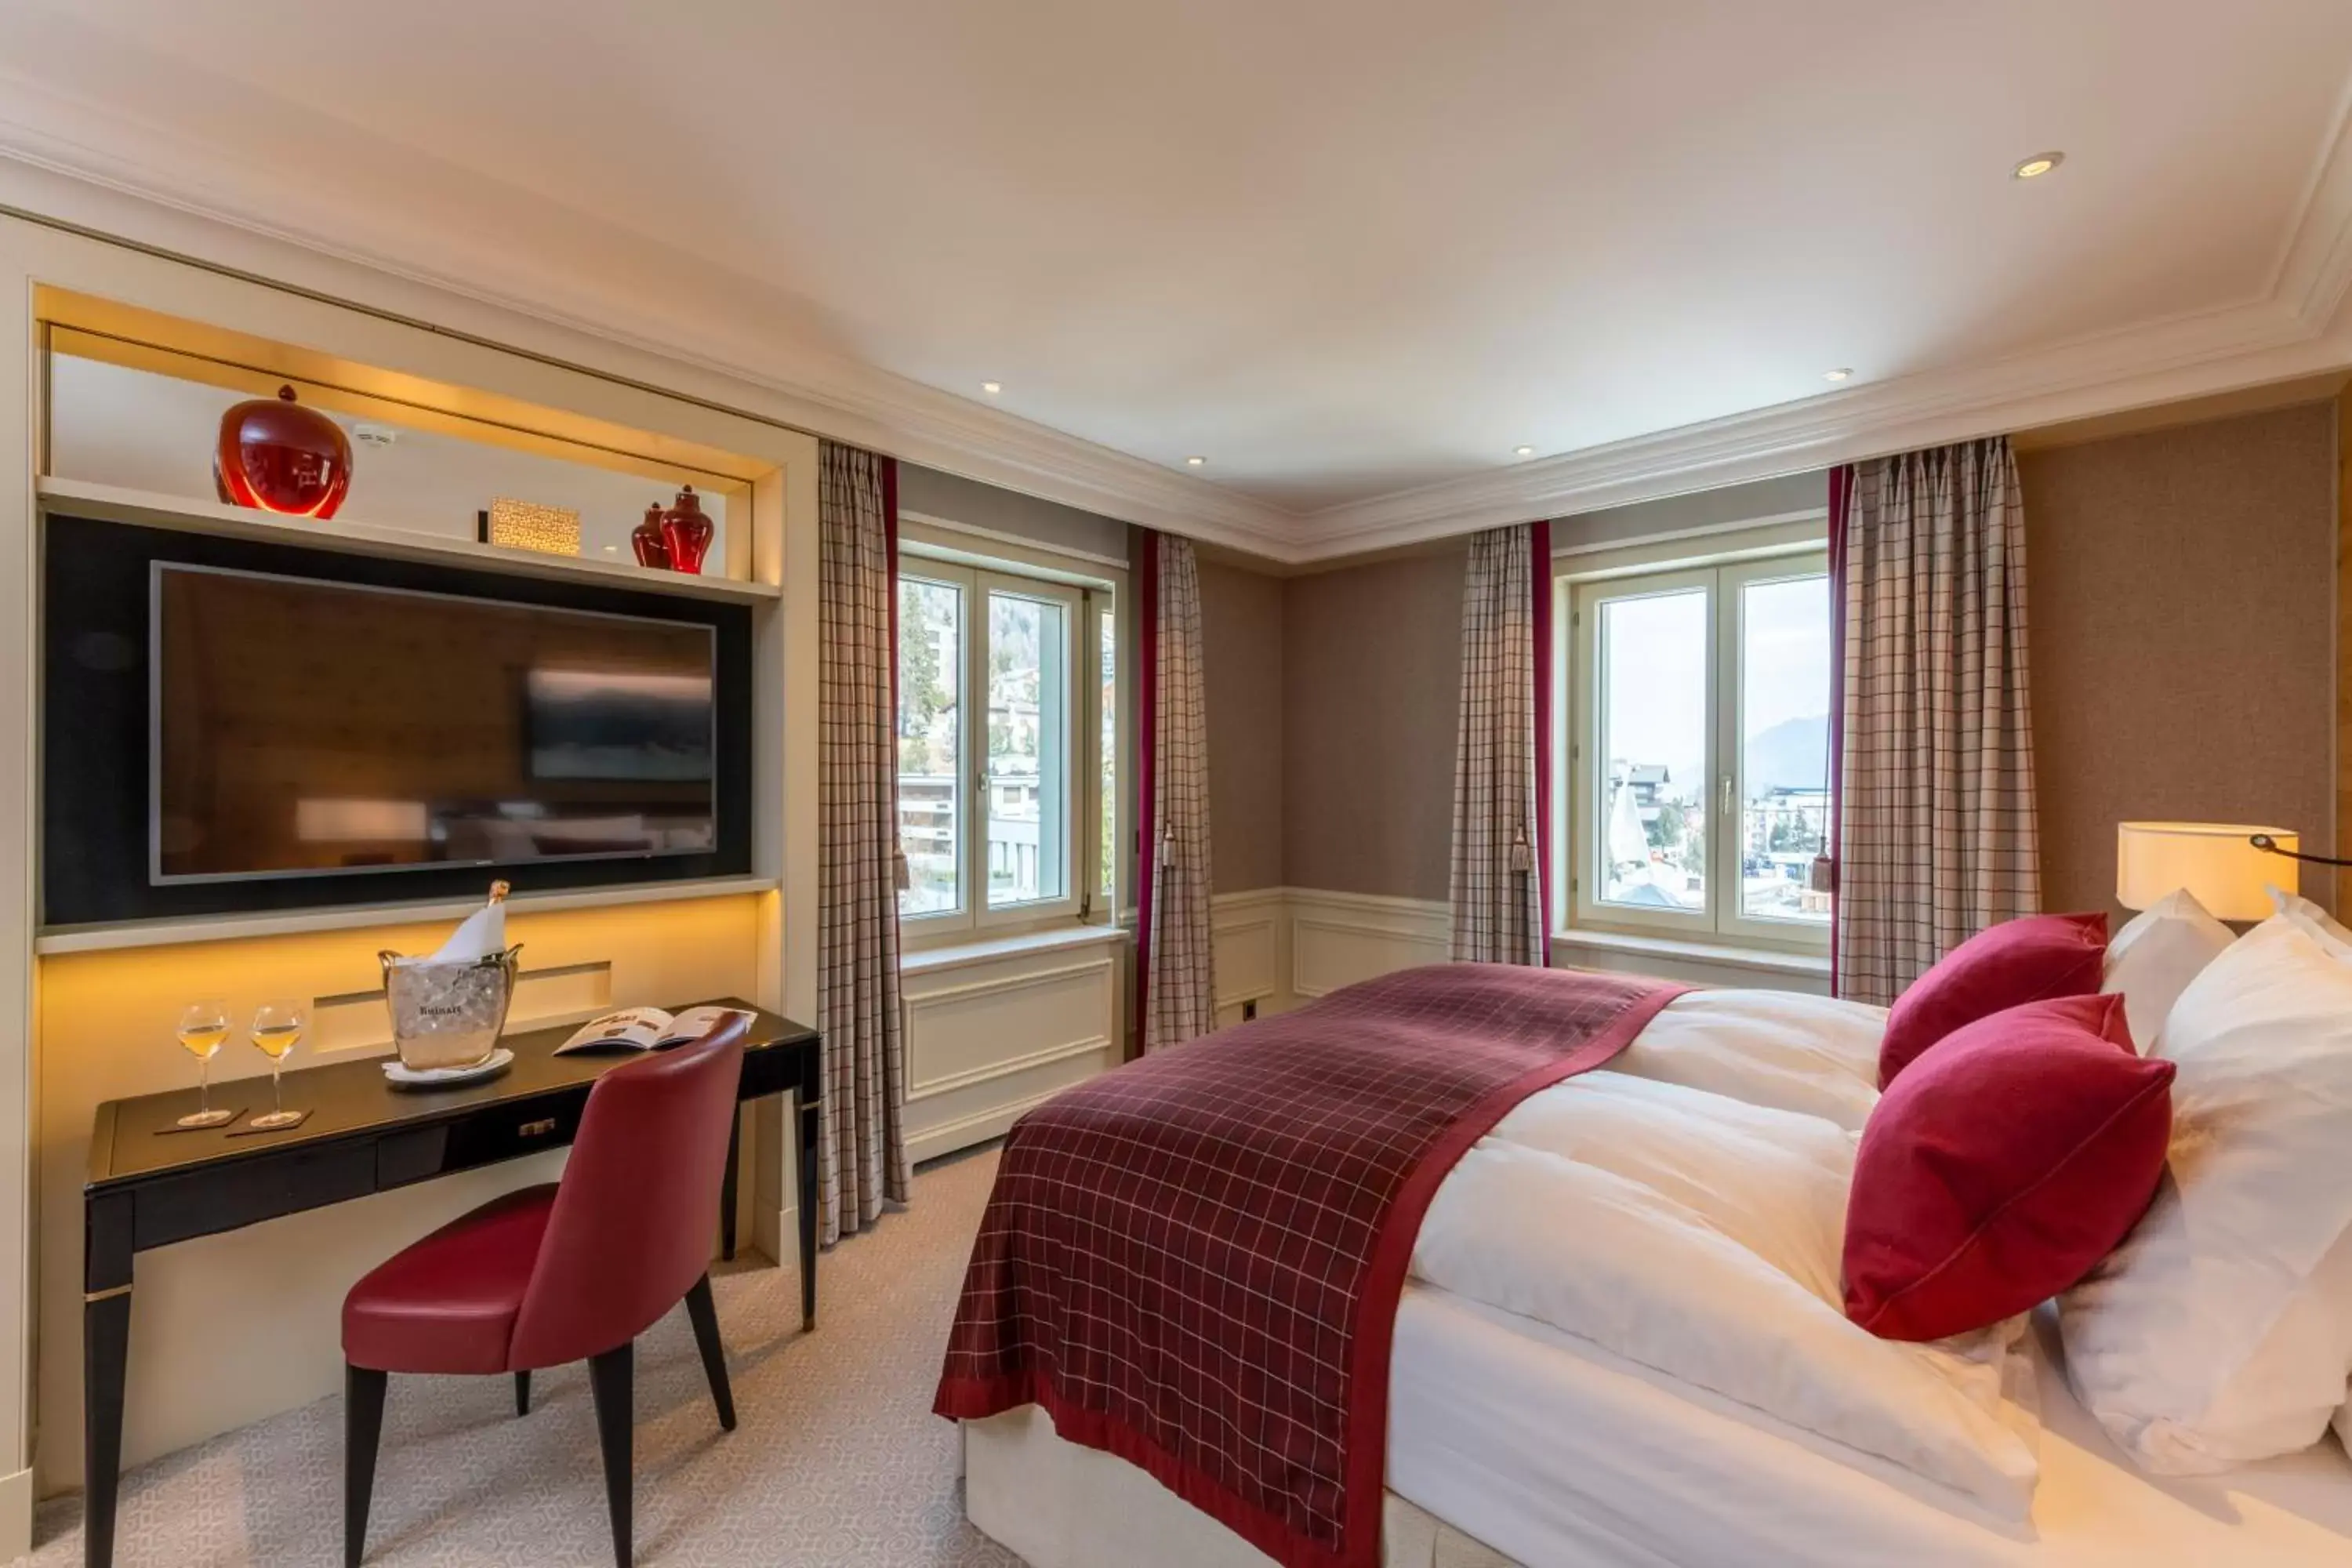 Bedroom, TV/Entertainment Center in Kulm Hotel St. Moritz